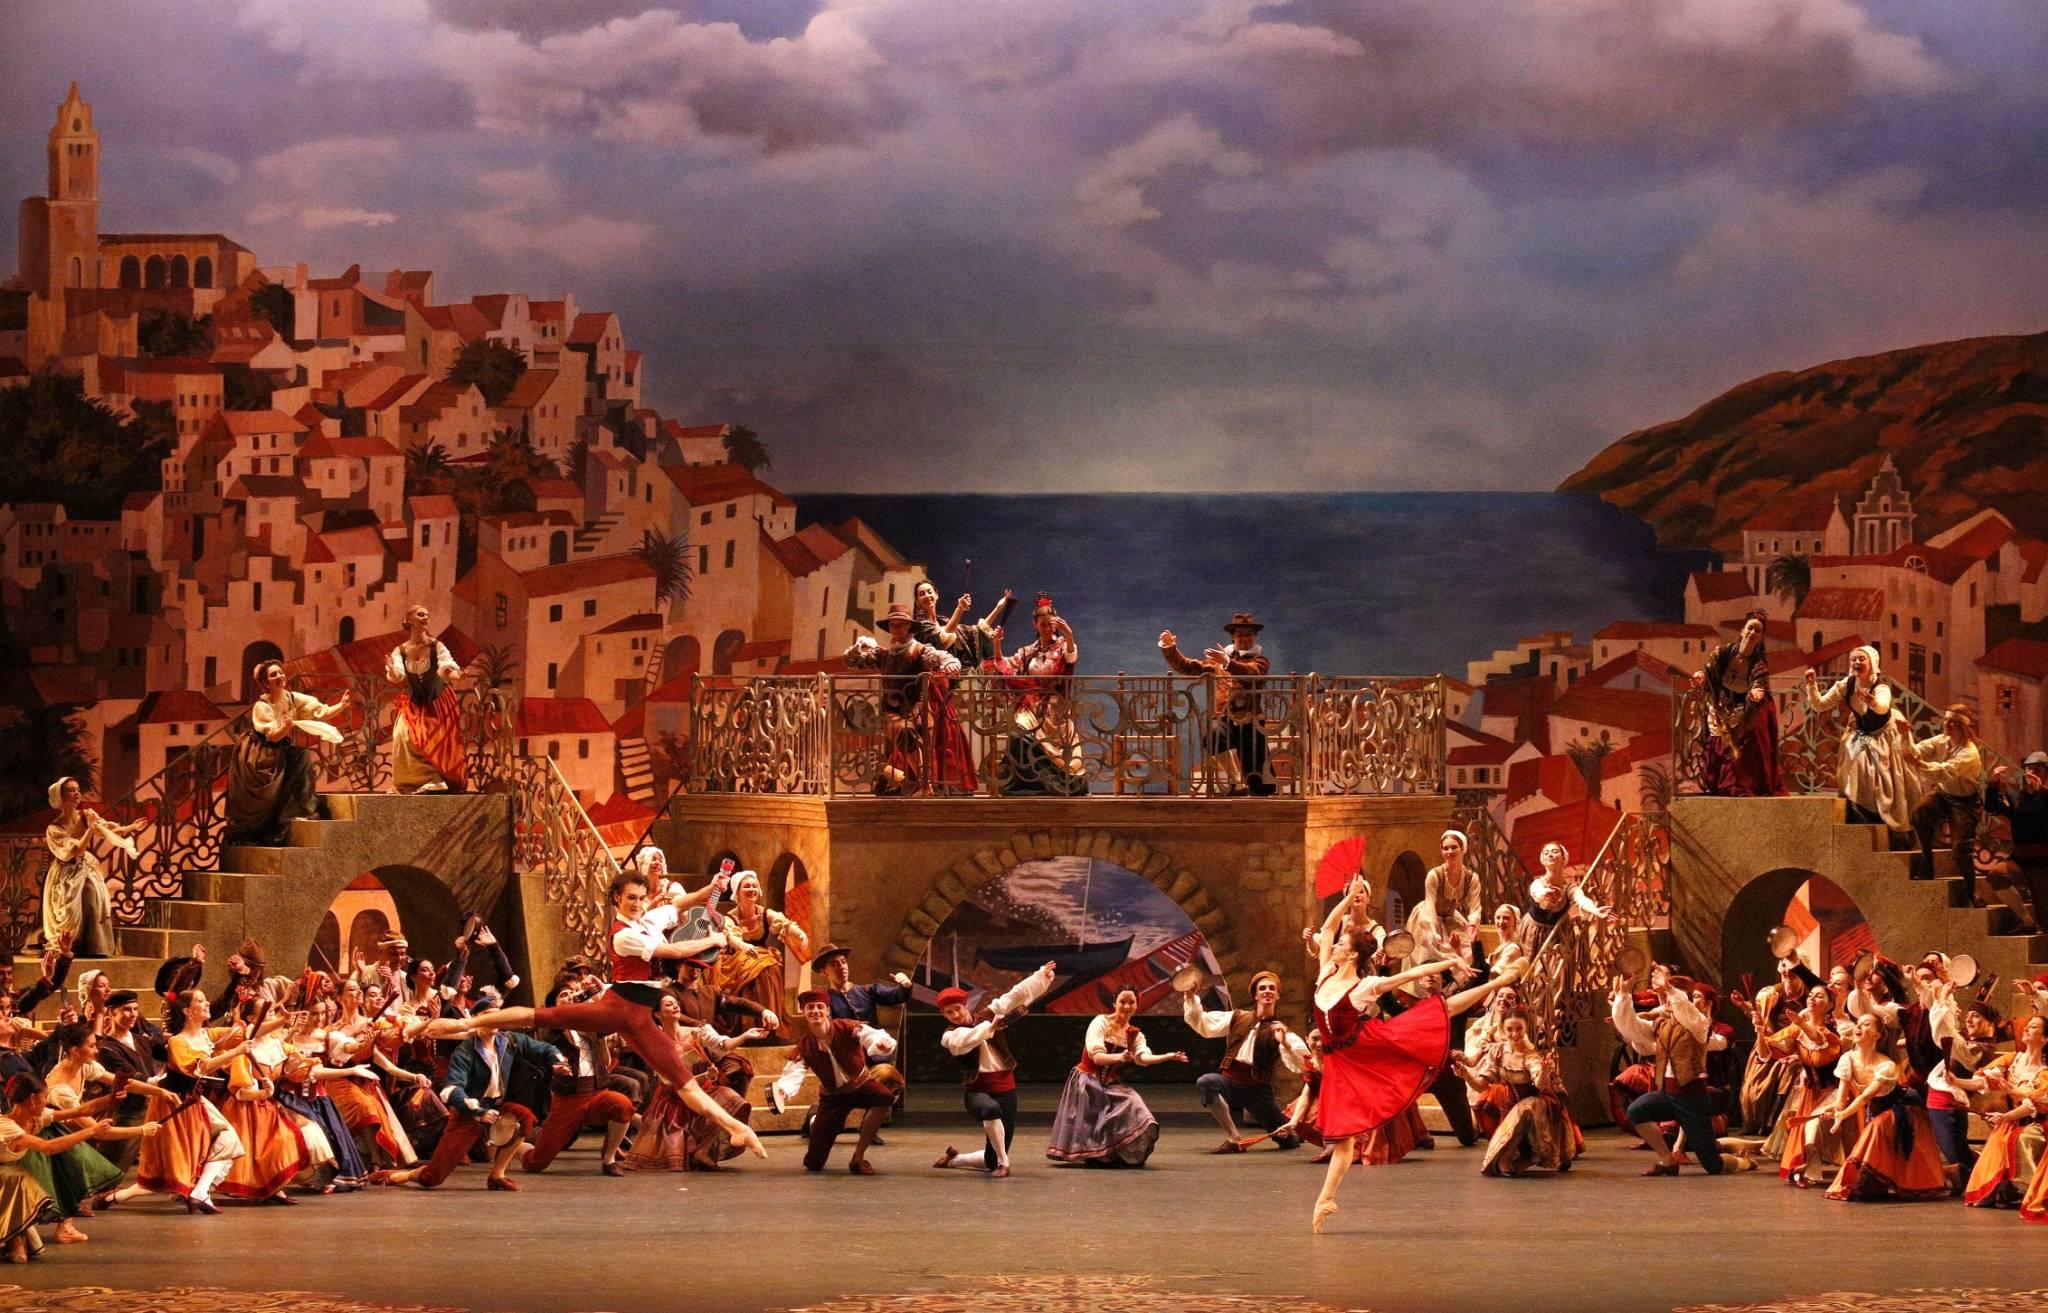  Mistrzowski balet „Don Kichot” z Teatru Bolszoj w Moskwie w blisko 40 polskich kinach już w grudniu | Fot.: D. Jusupow